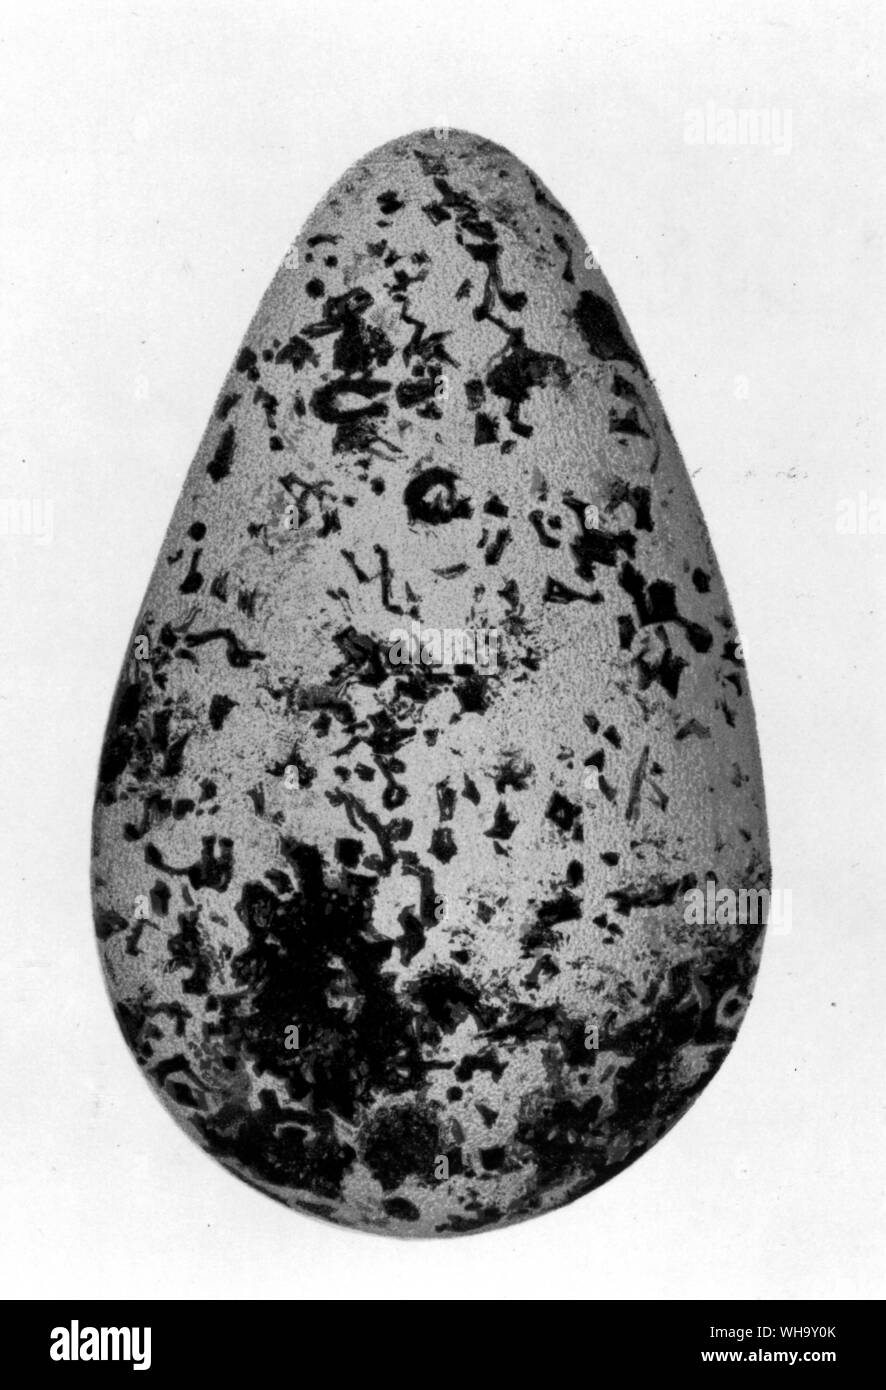 Eier der Riesenalk (halber natürlicher Größe). Lithographien in S. trauern Der Riesenalk oder Garefowl (Edinburgh, 1885). Stockfoto